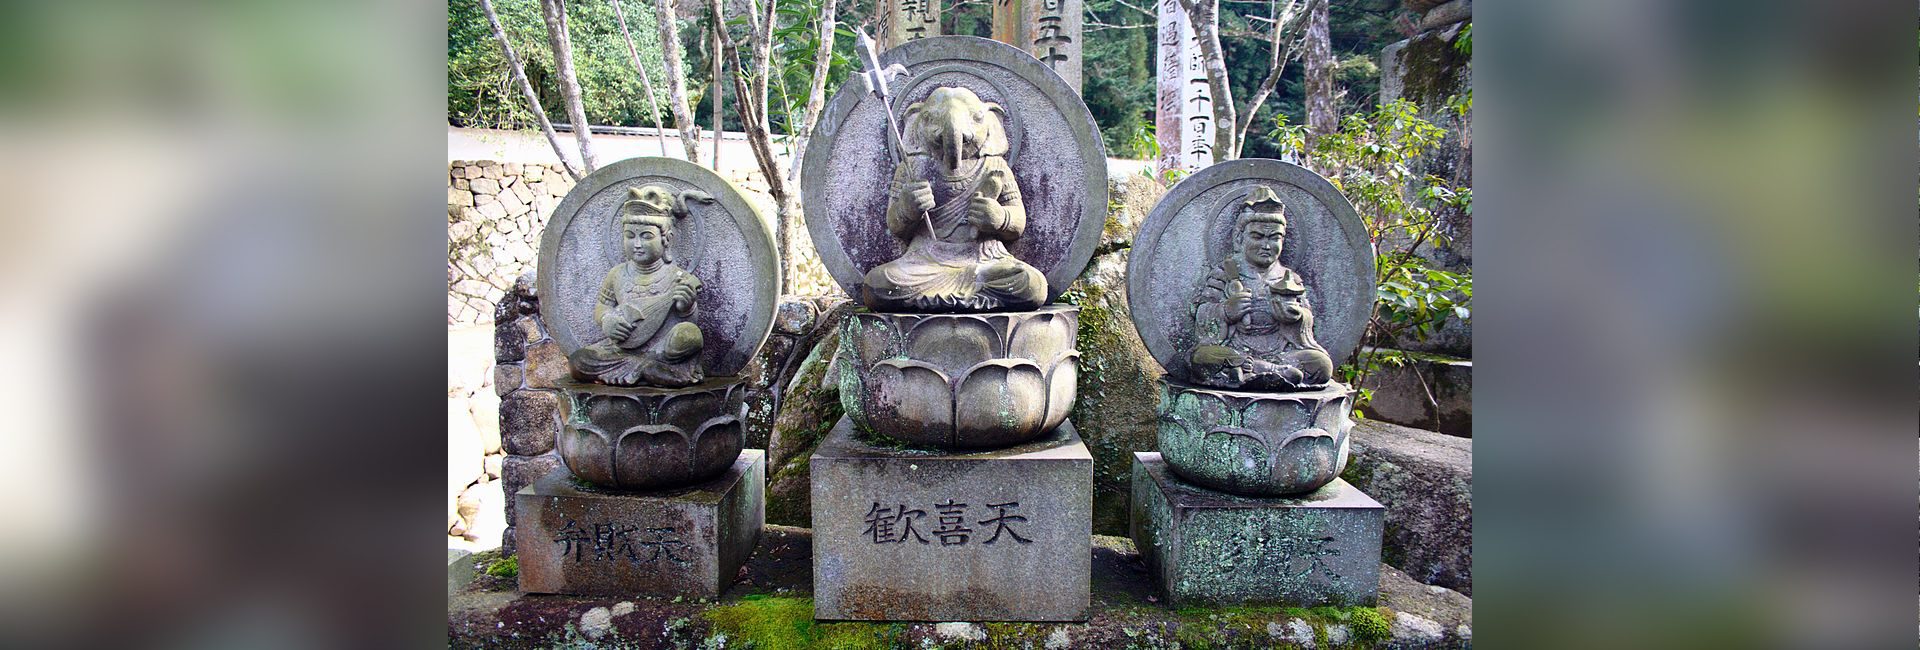 Il Dio asiatico: sulle tracce di Lord Ganesha